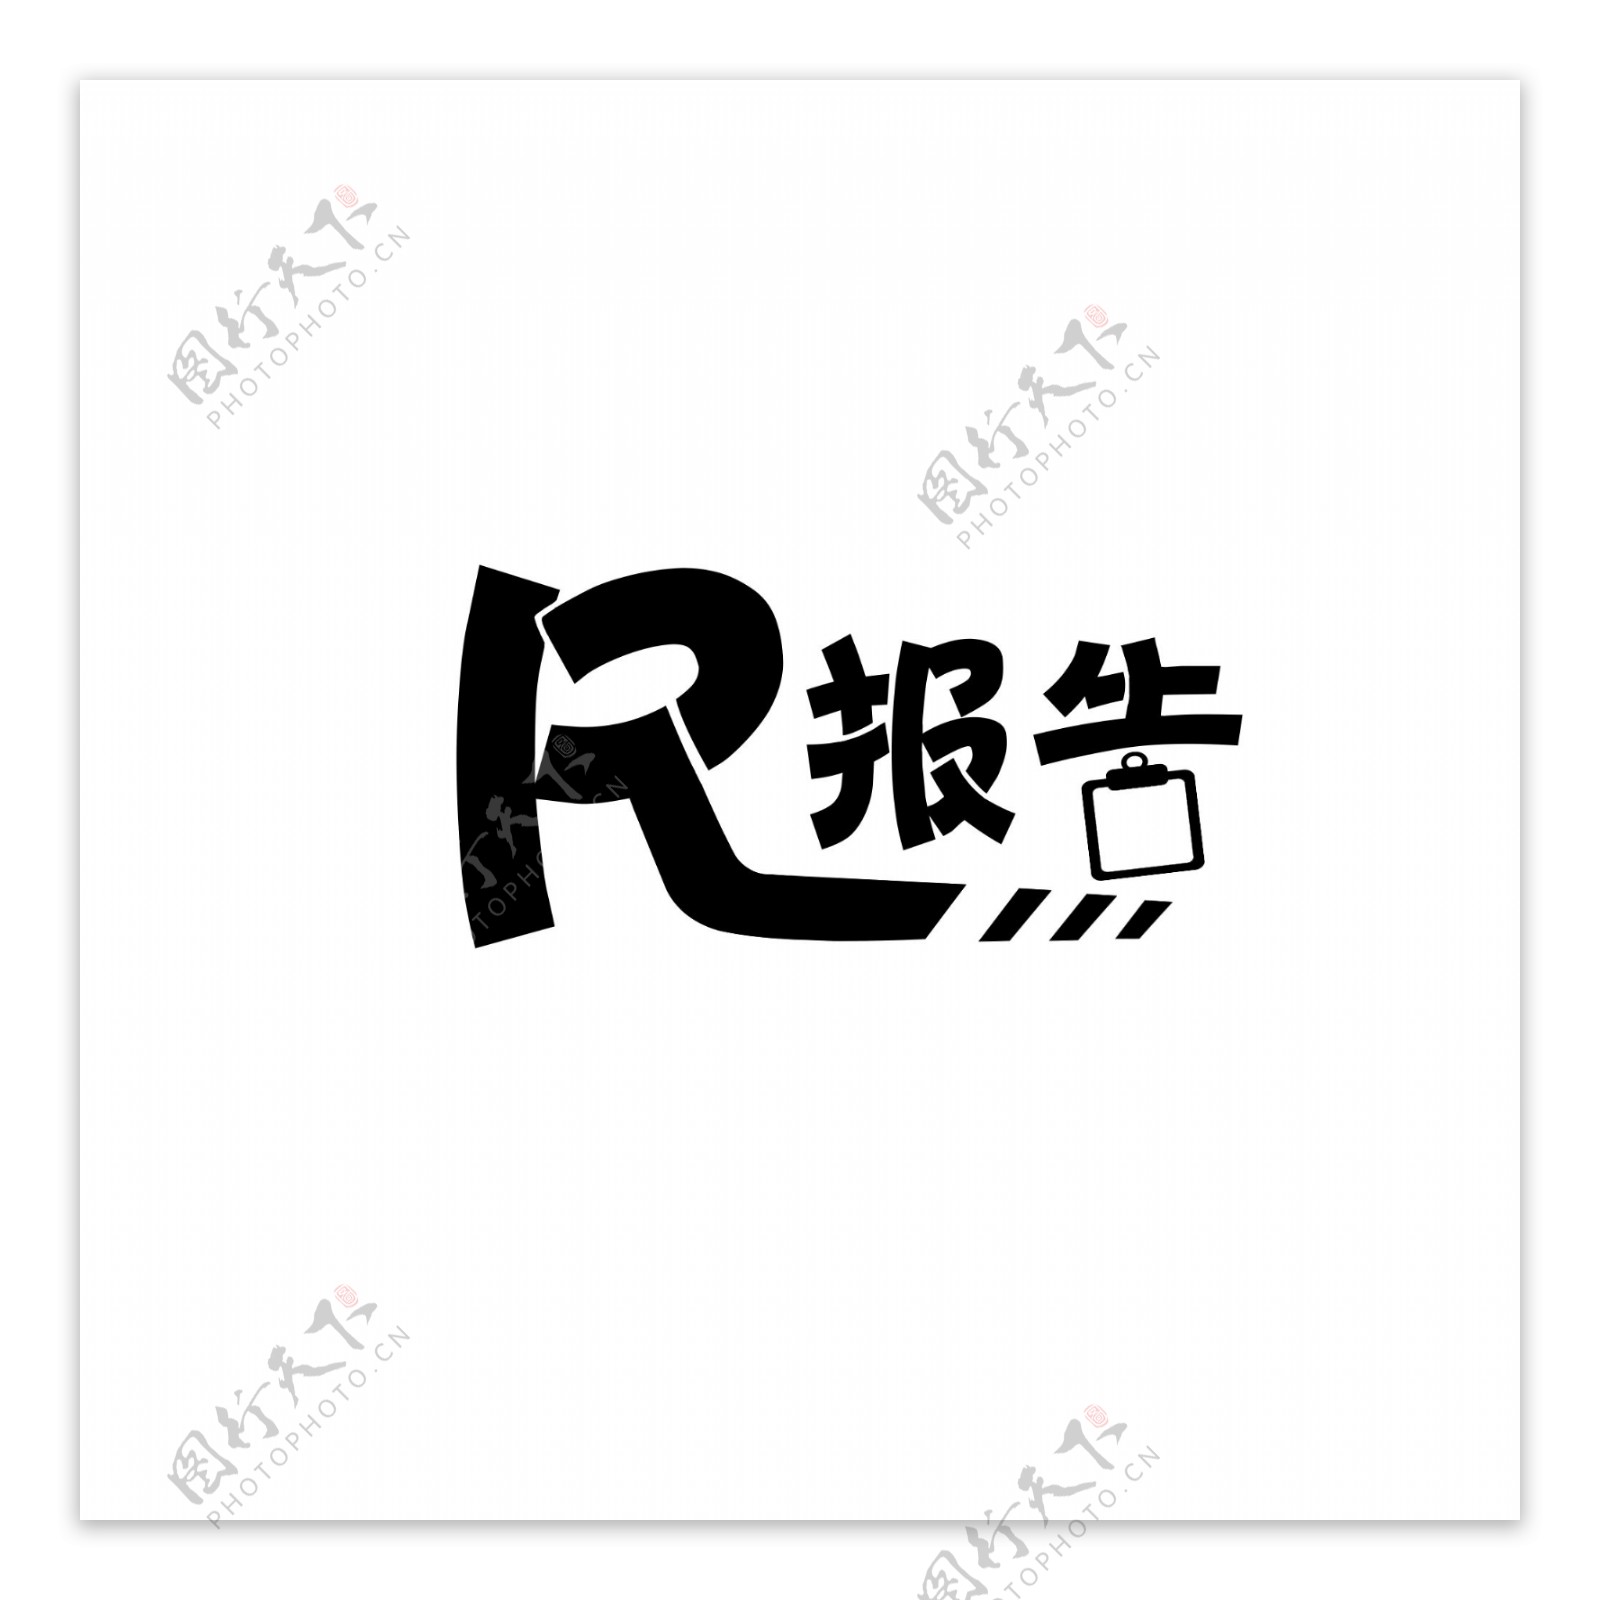 简约幽默医疗logo